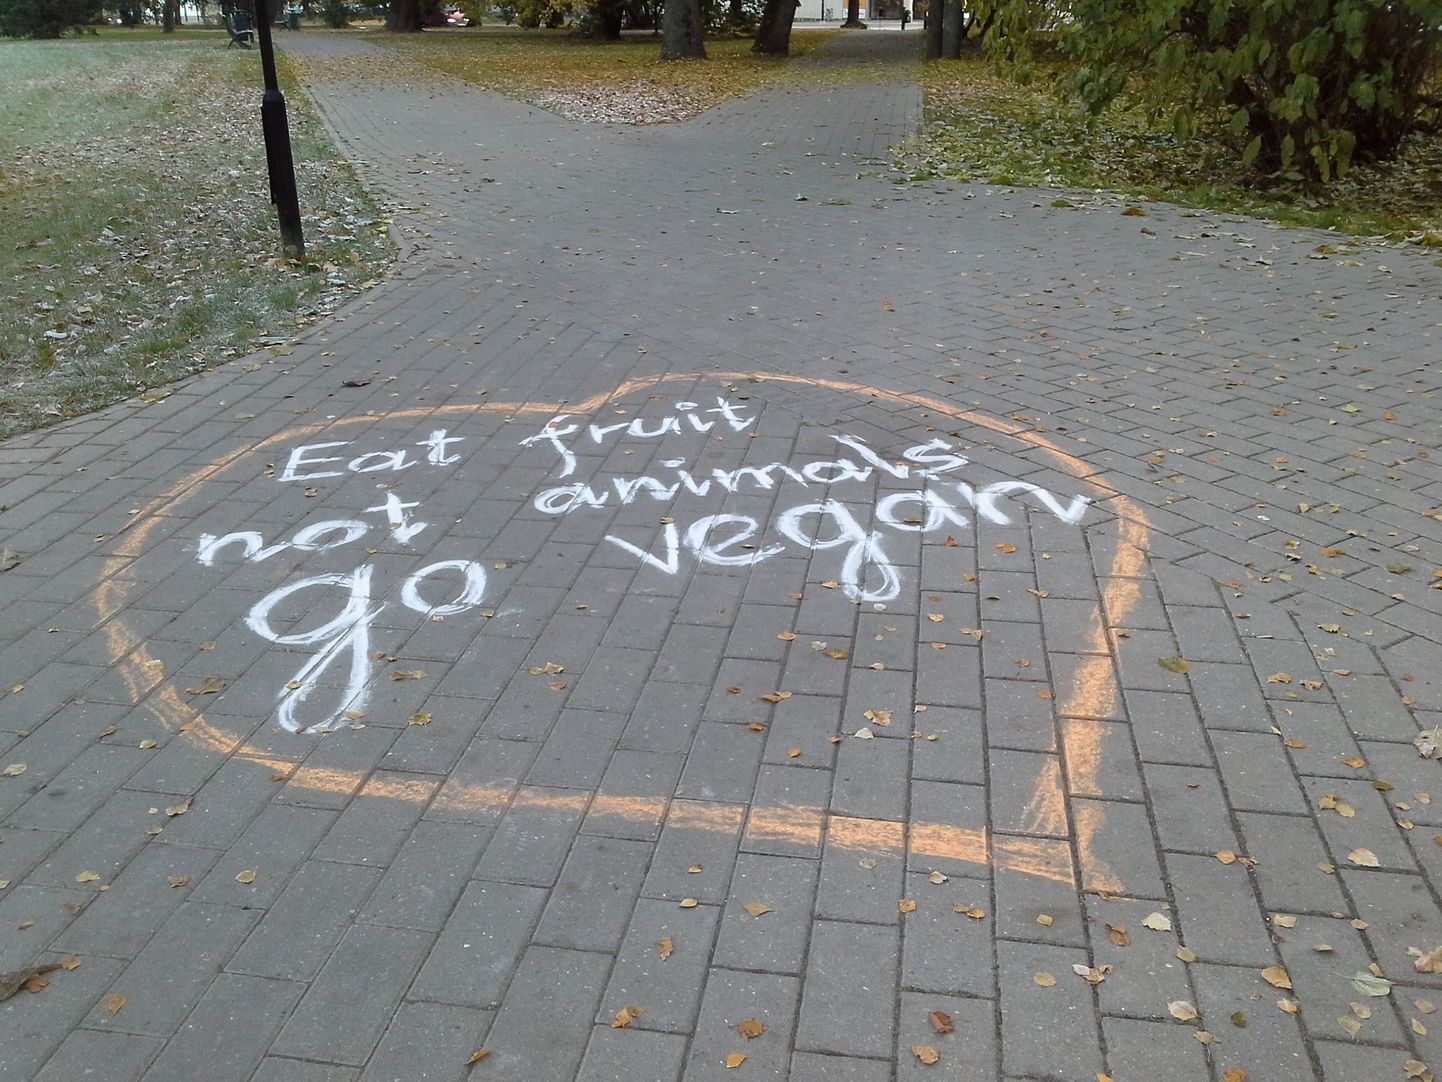 Ülejõe pargi kõnniteedele on kriitidega joonistatud südameid, mille sisse kirjutatud tekstid kutsuvad üles veganlusele.